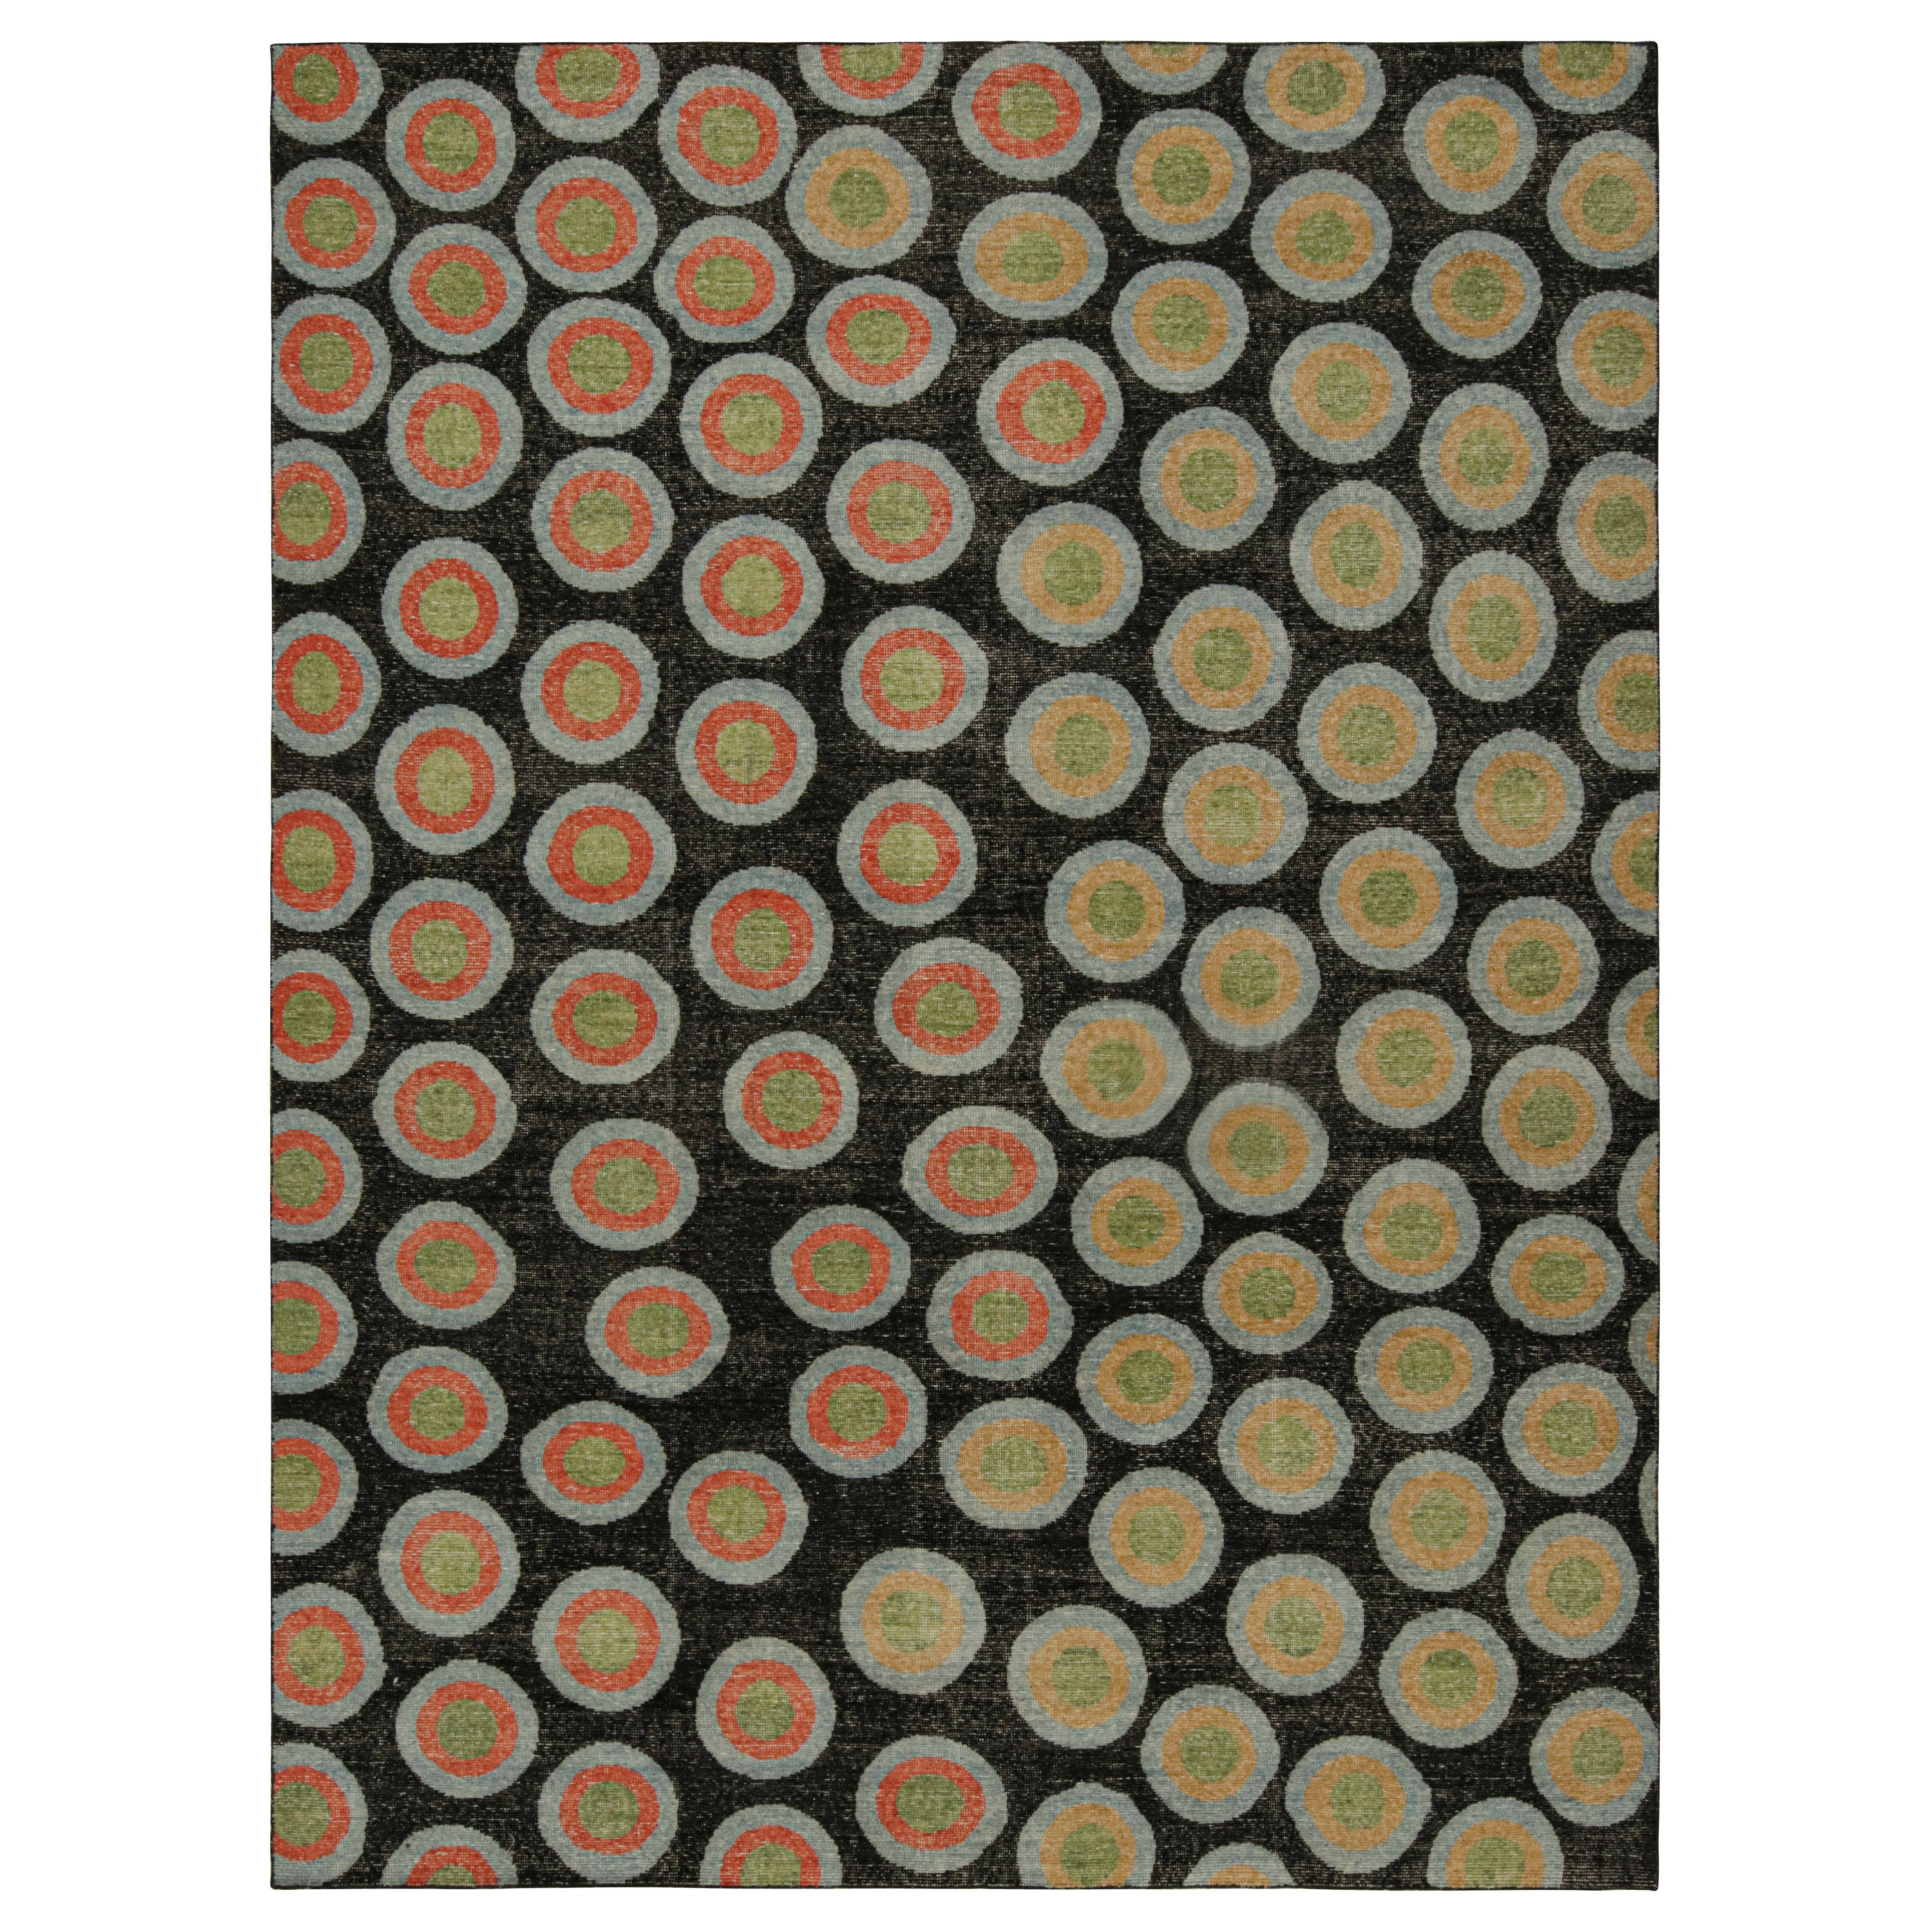 Rug & Kilim's Modern Deco Rug, mit geometrischen Mustern in Grün, Orange und Blau